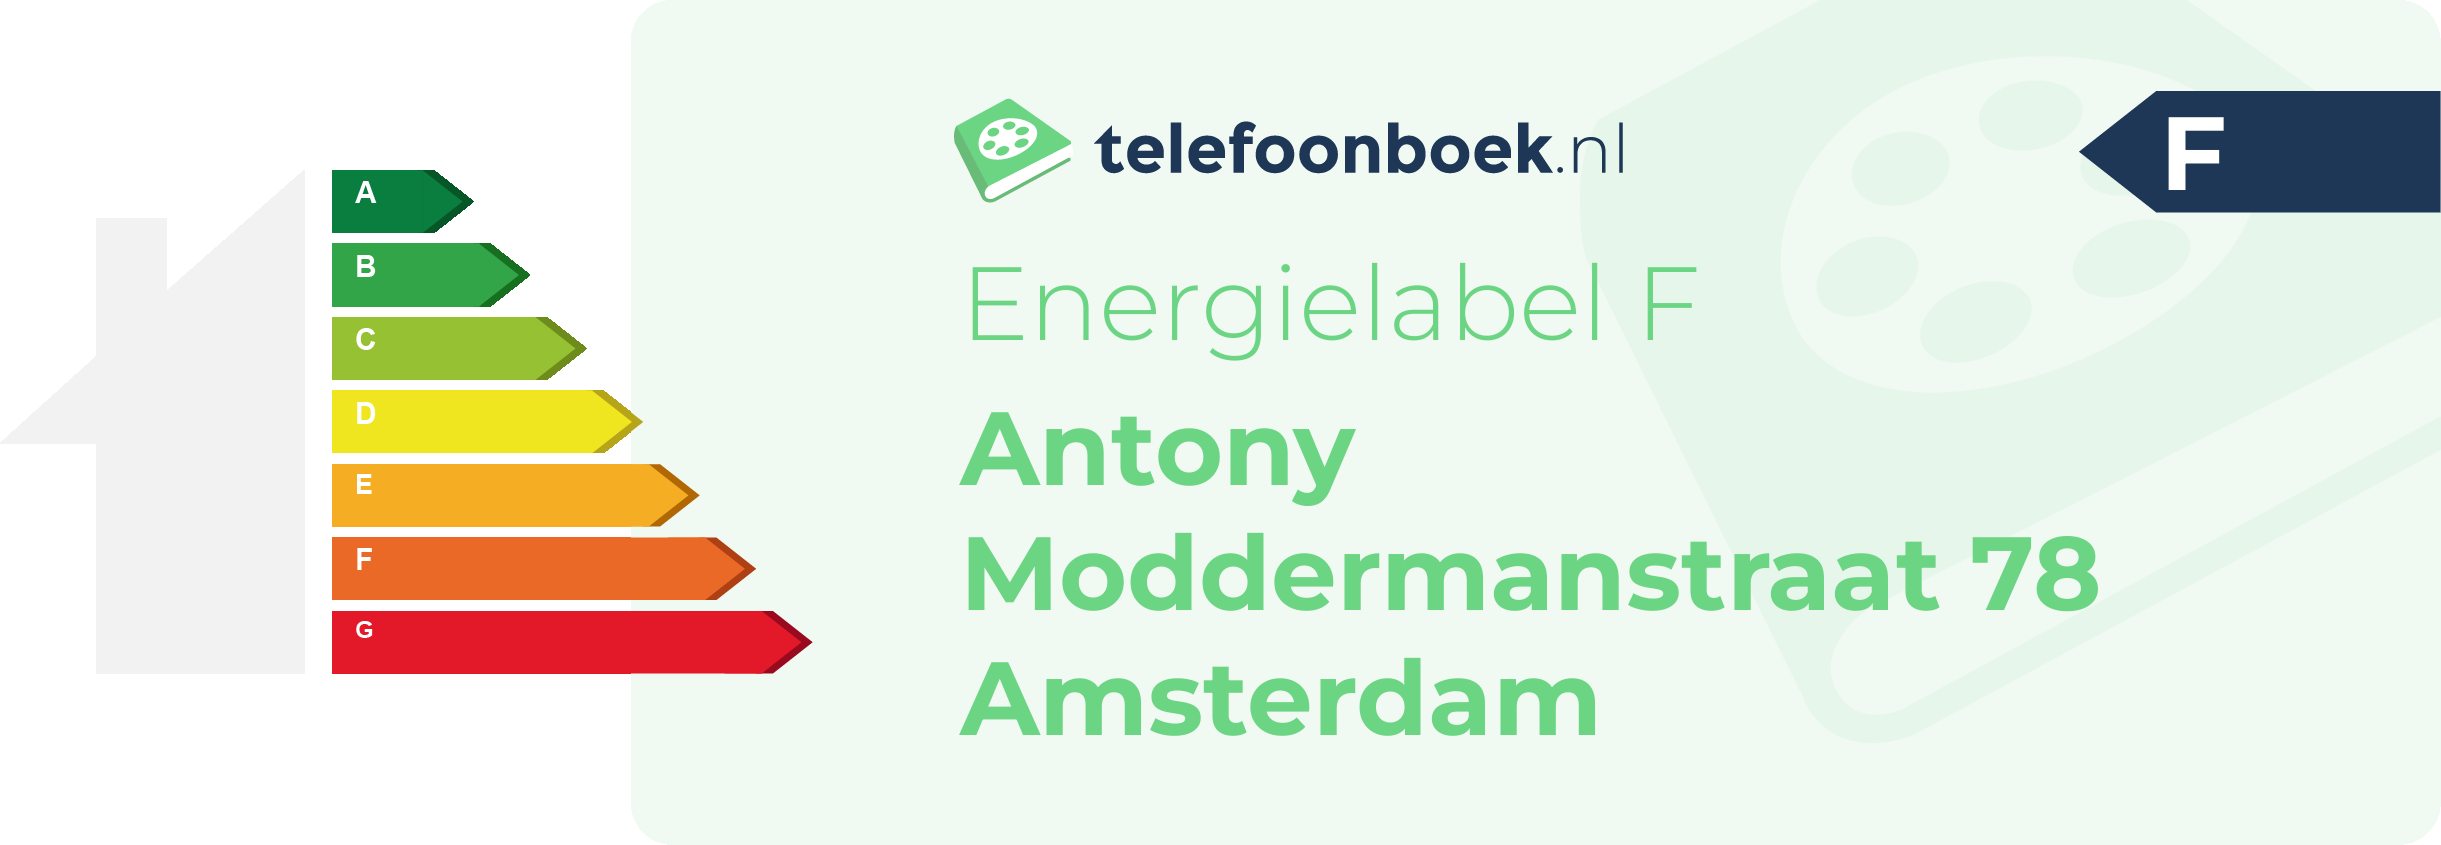 Energielabel Antony Moddermanstraat 78 Amsterdam